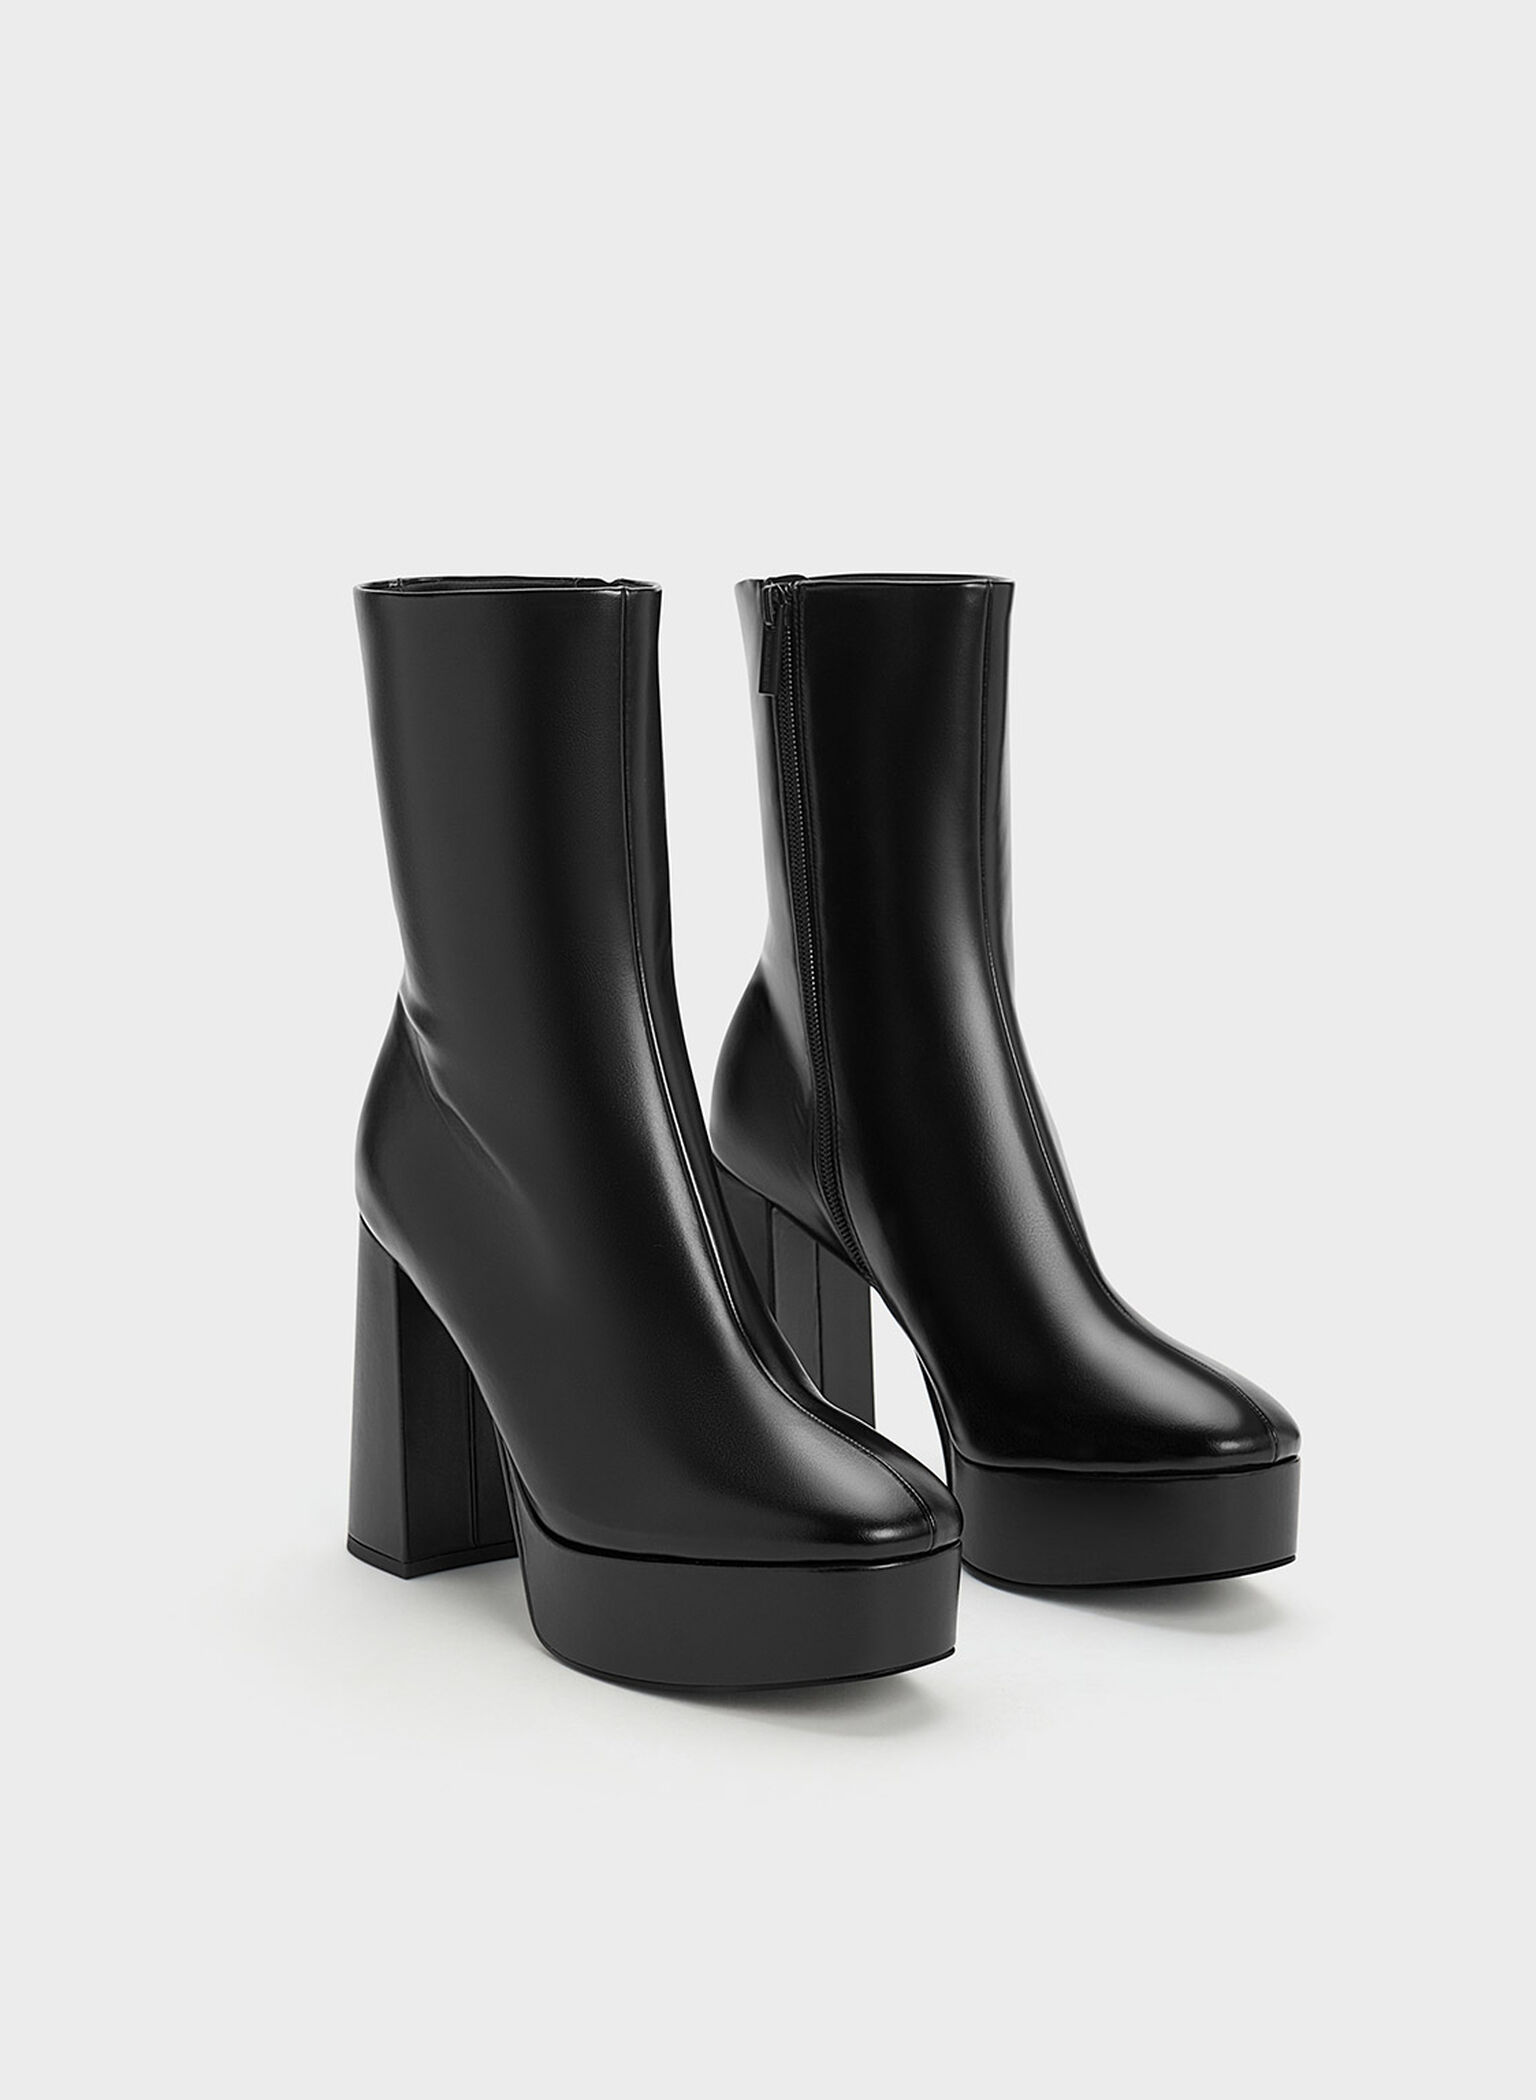 Platform Side-Zip Ankle Boots, Black, hi-res